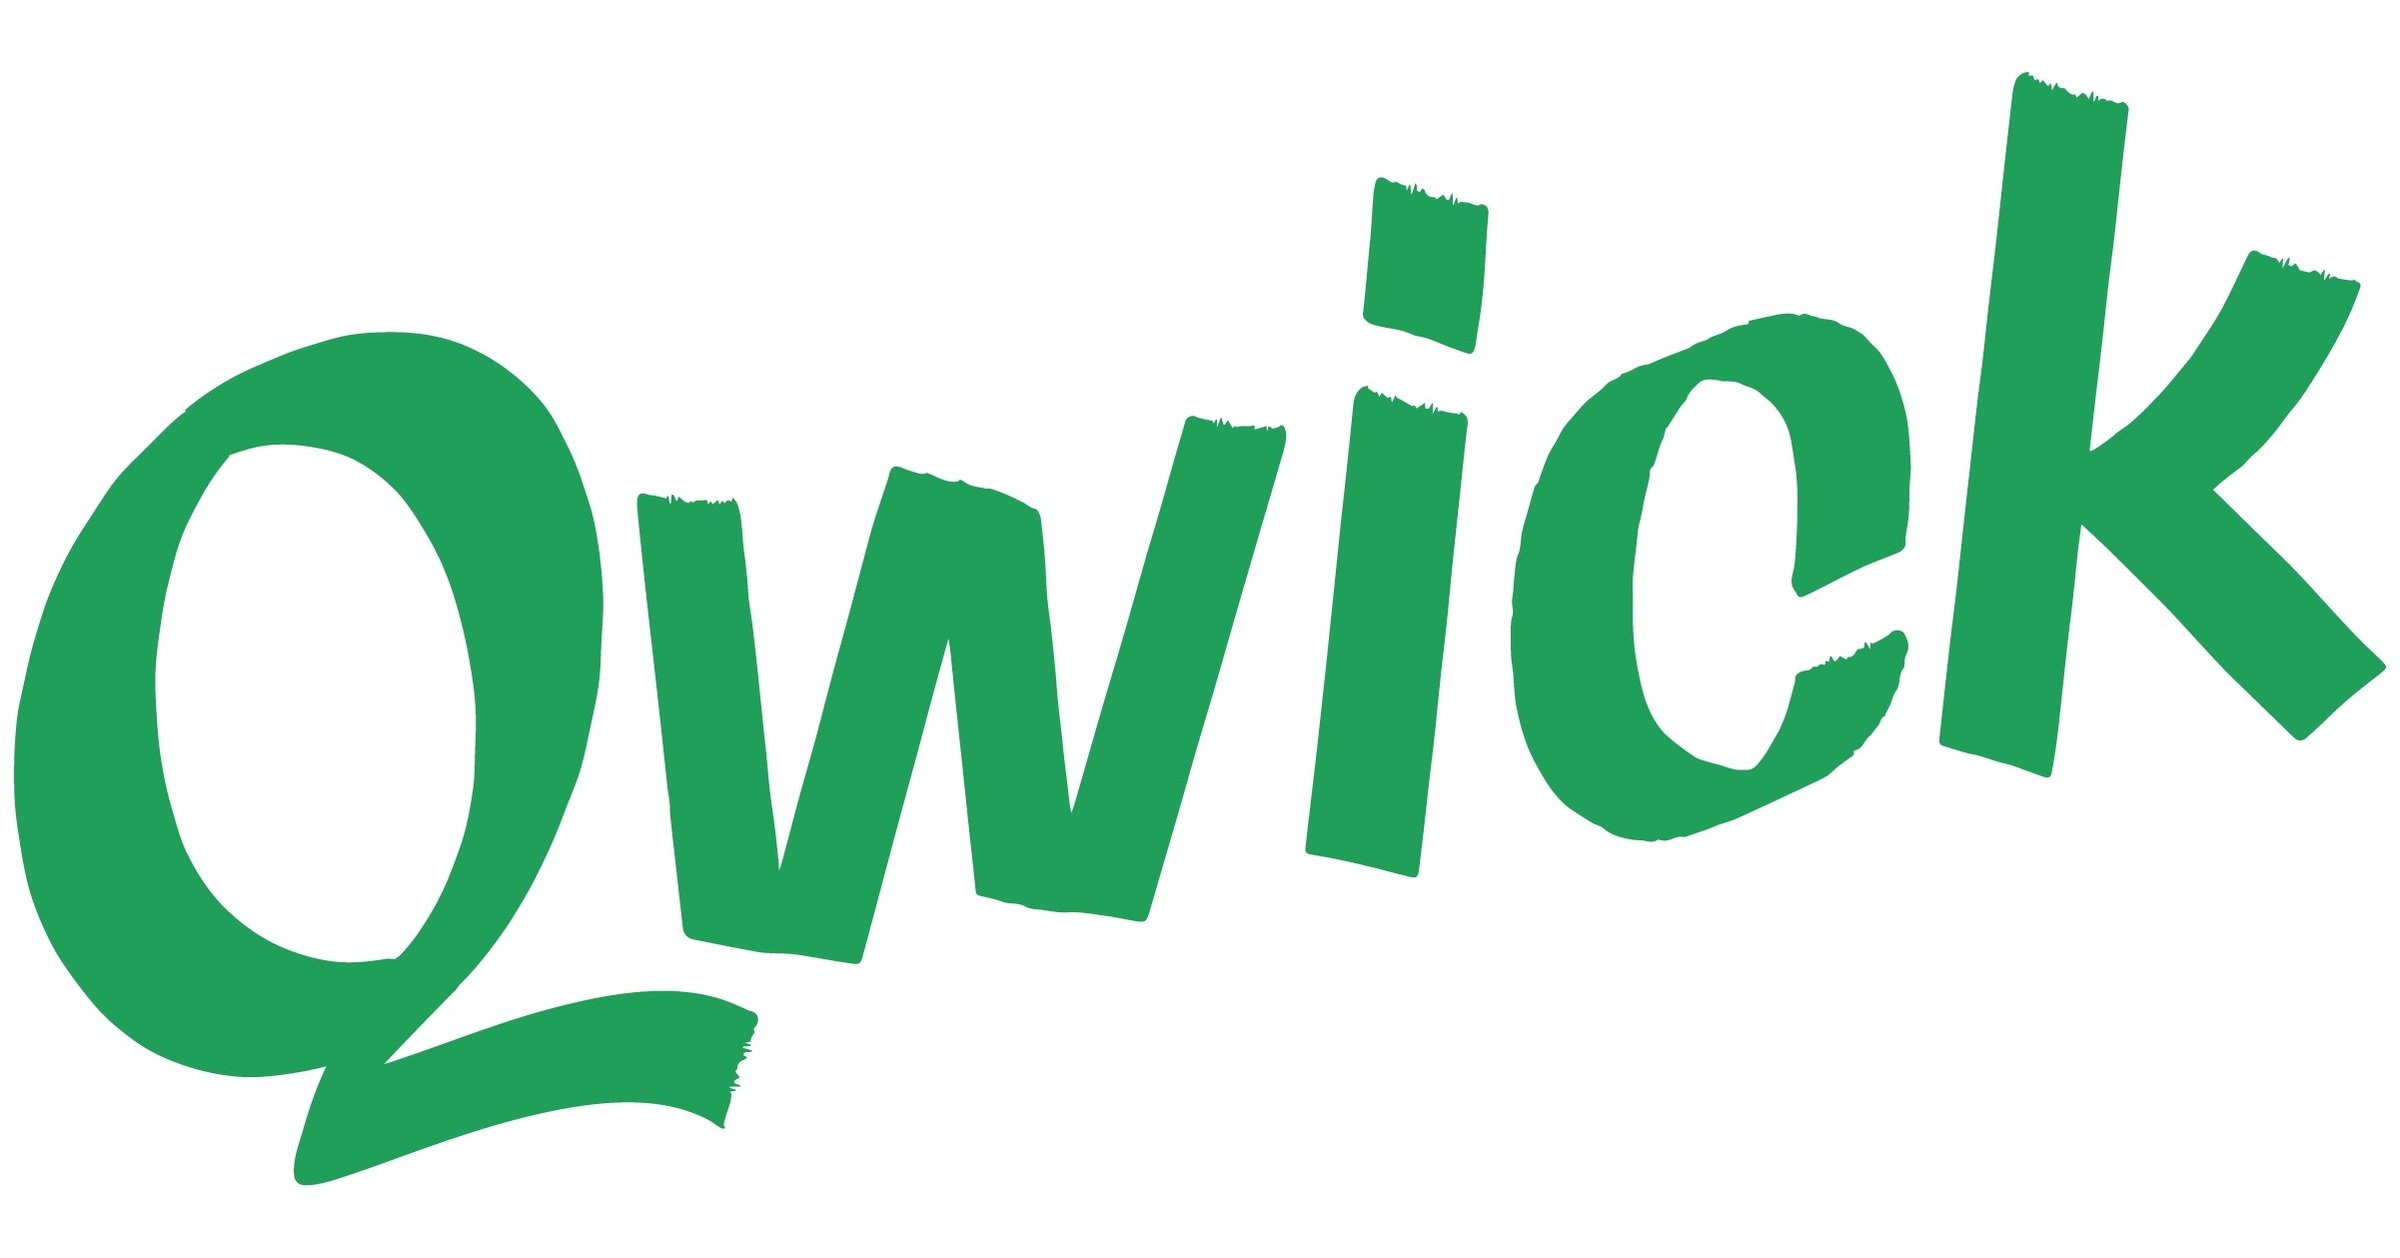 Qwuick